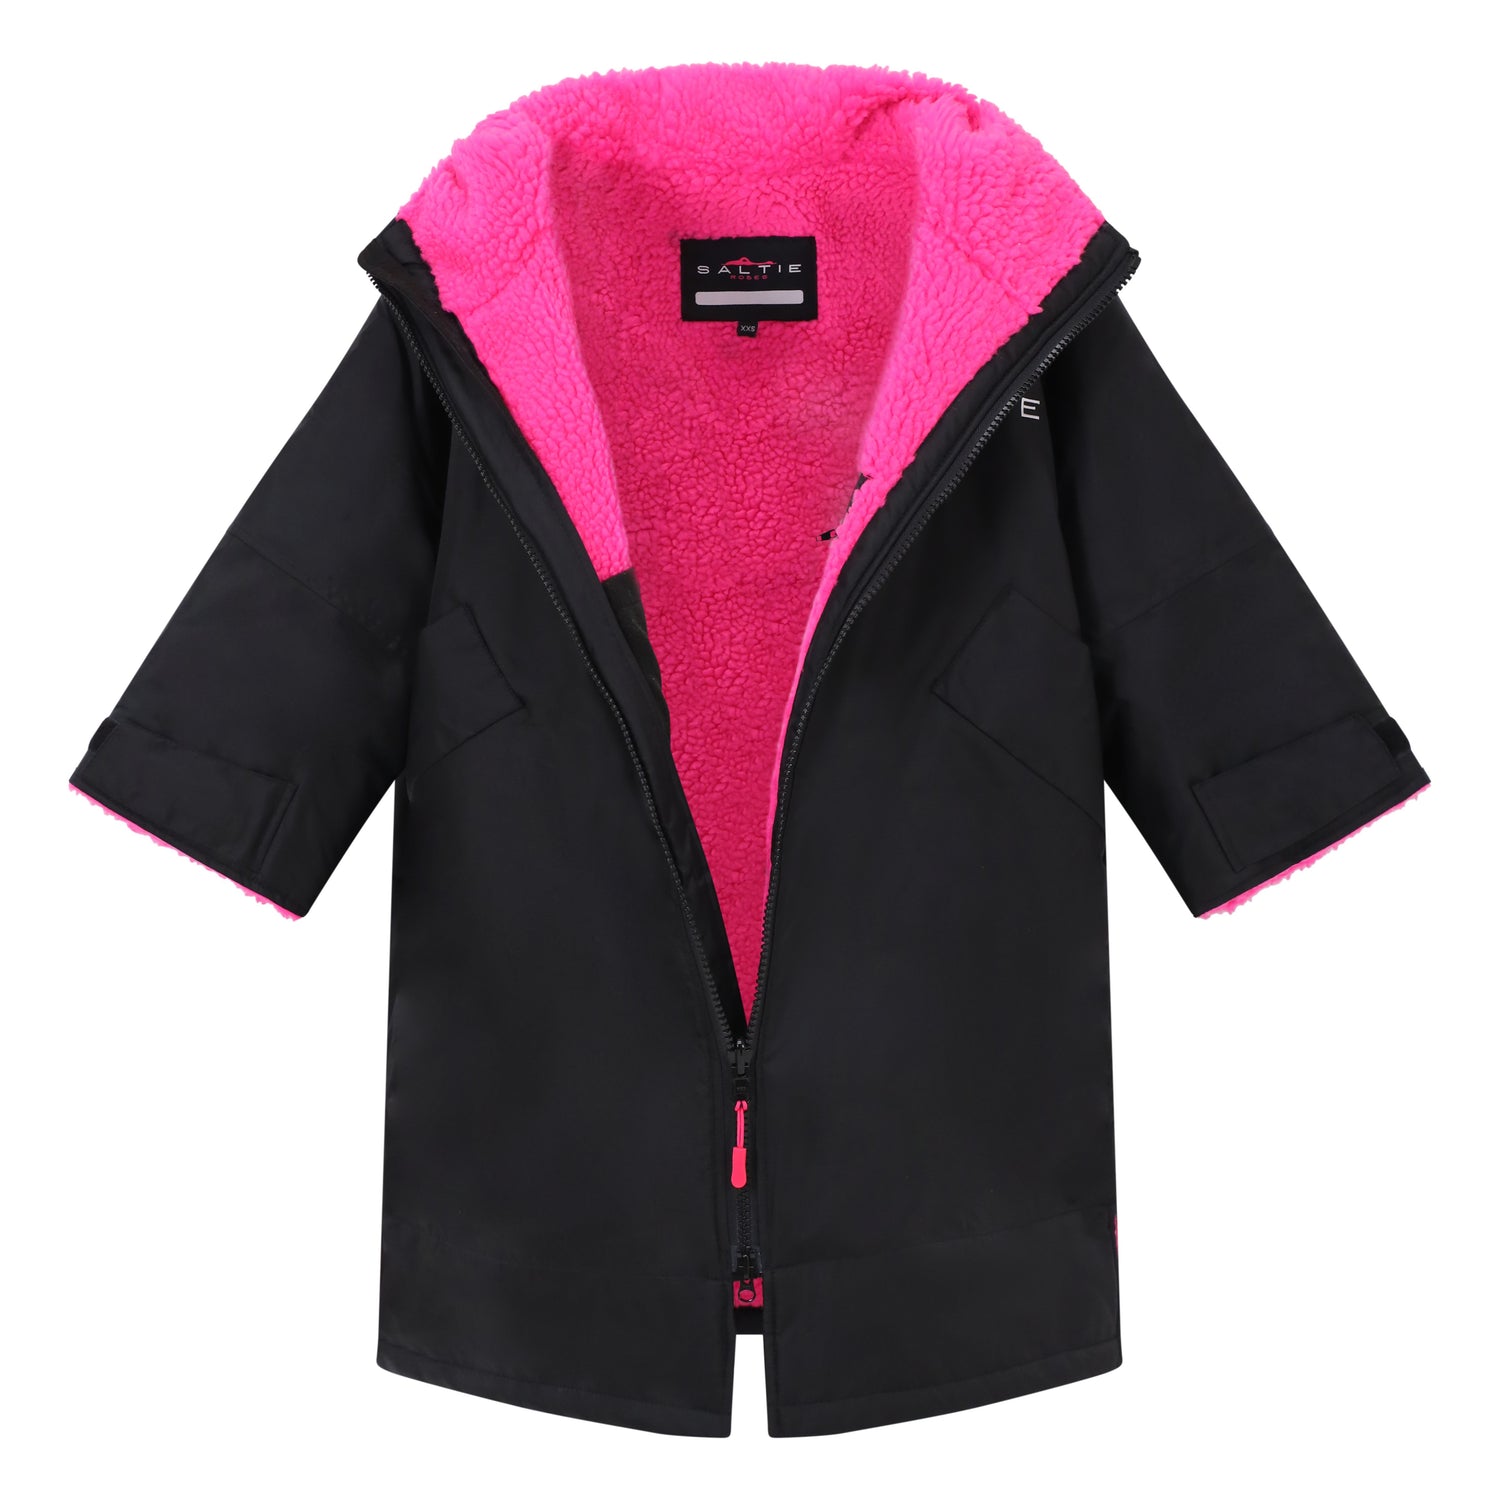 Saltie Junior Changing Robe - Black/Hot Pink